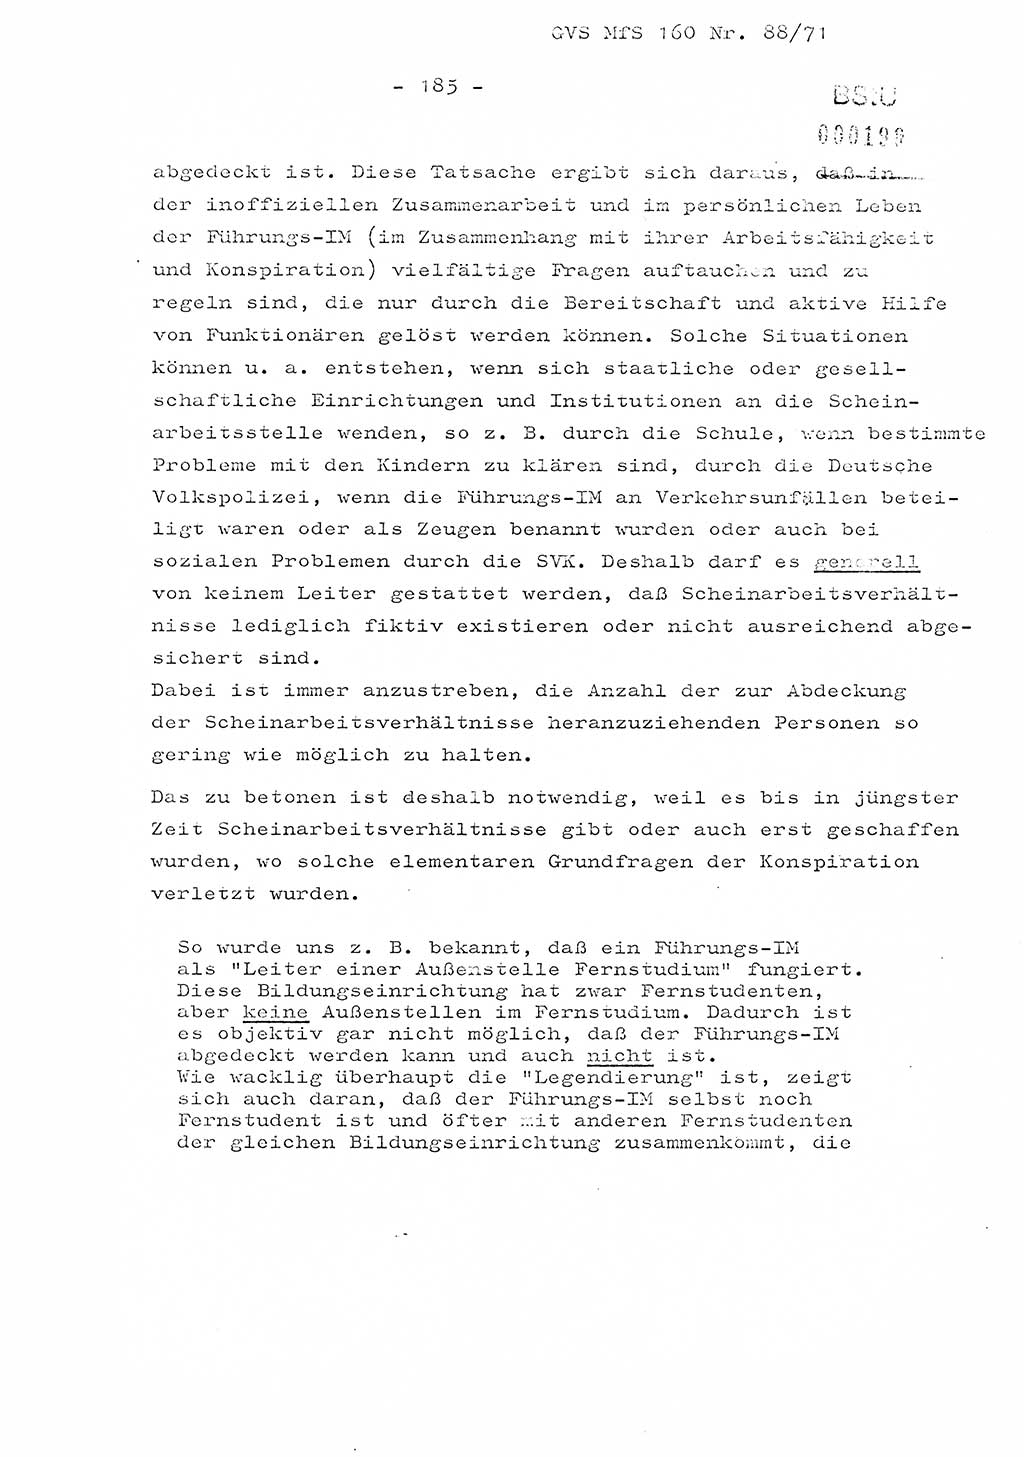 Dissertation Oberstleutnant Josef Schwarz (BV Schwerin), Major Fritz Amm (JHS), Hauptmann Peter Gräßler (JHS), Ministerium für Staatssicherheit (MfS) [Deutsche Demokratische Republik (DDR)], Juristische Hochschule (JHS), Geheime Verschlußsache (GVS) 160-88/71, Potsdam 1972, Seite 185 (Diss. MfS DDR JHS GVS 160-88/71 1972, S. 185)